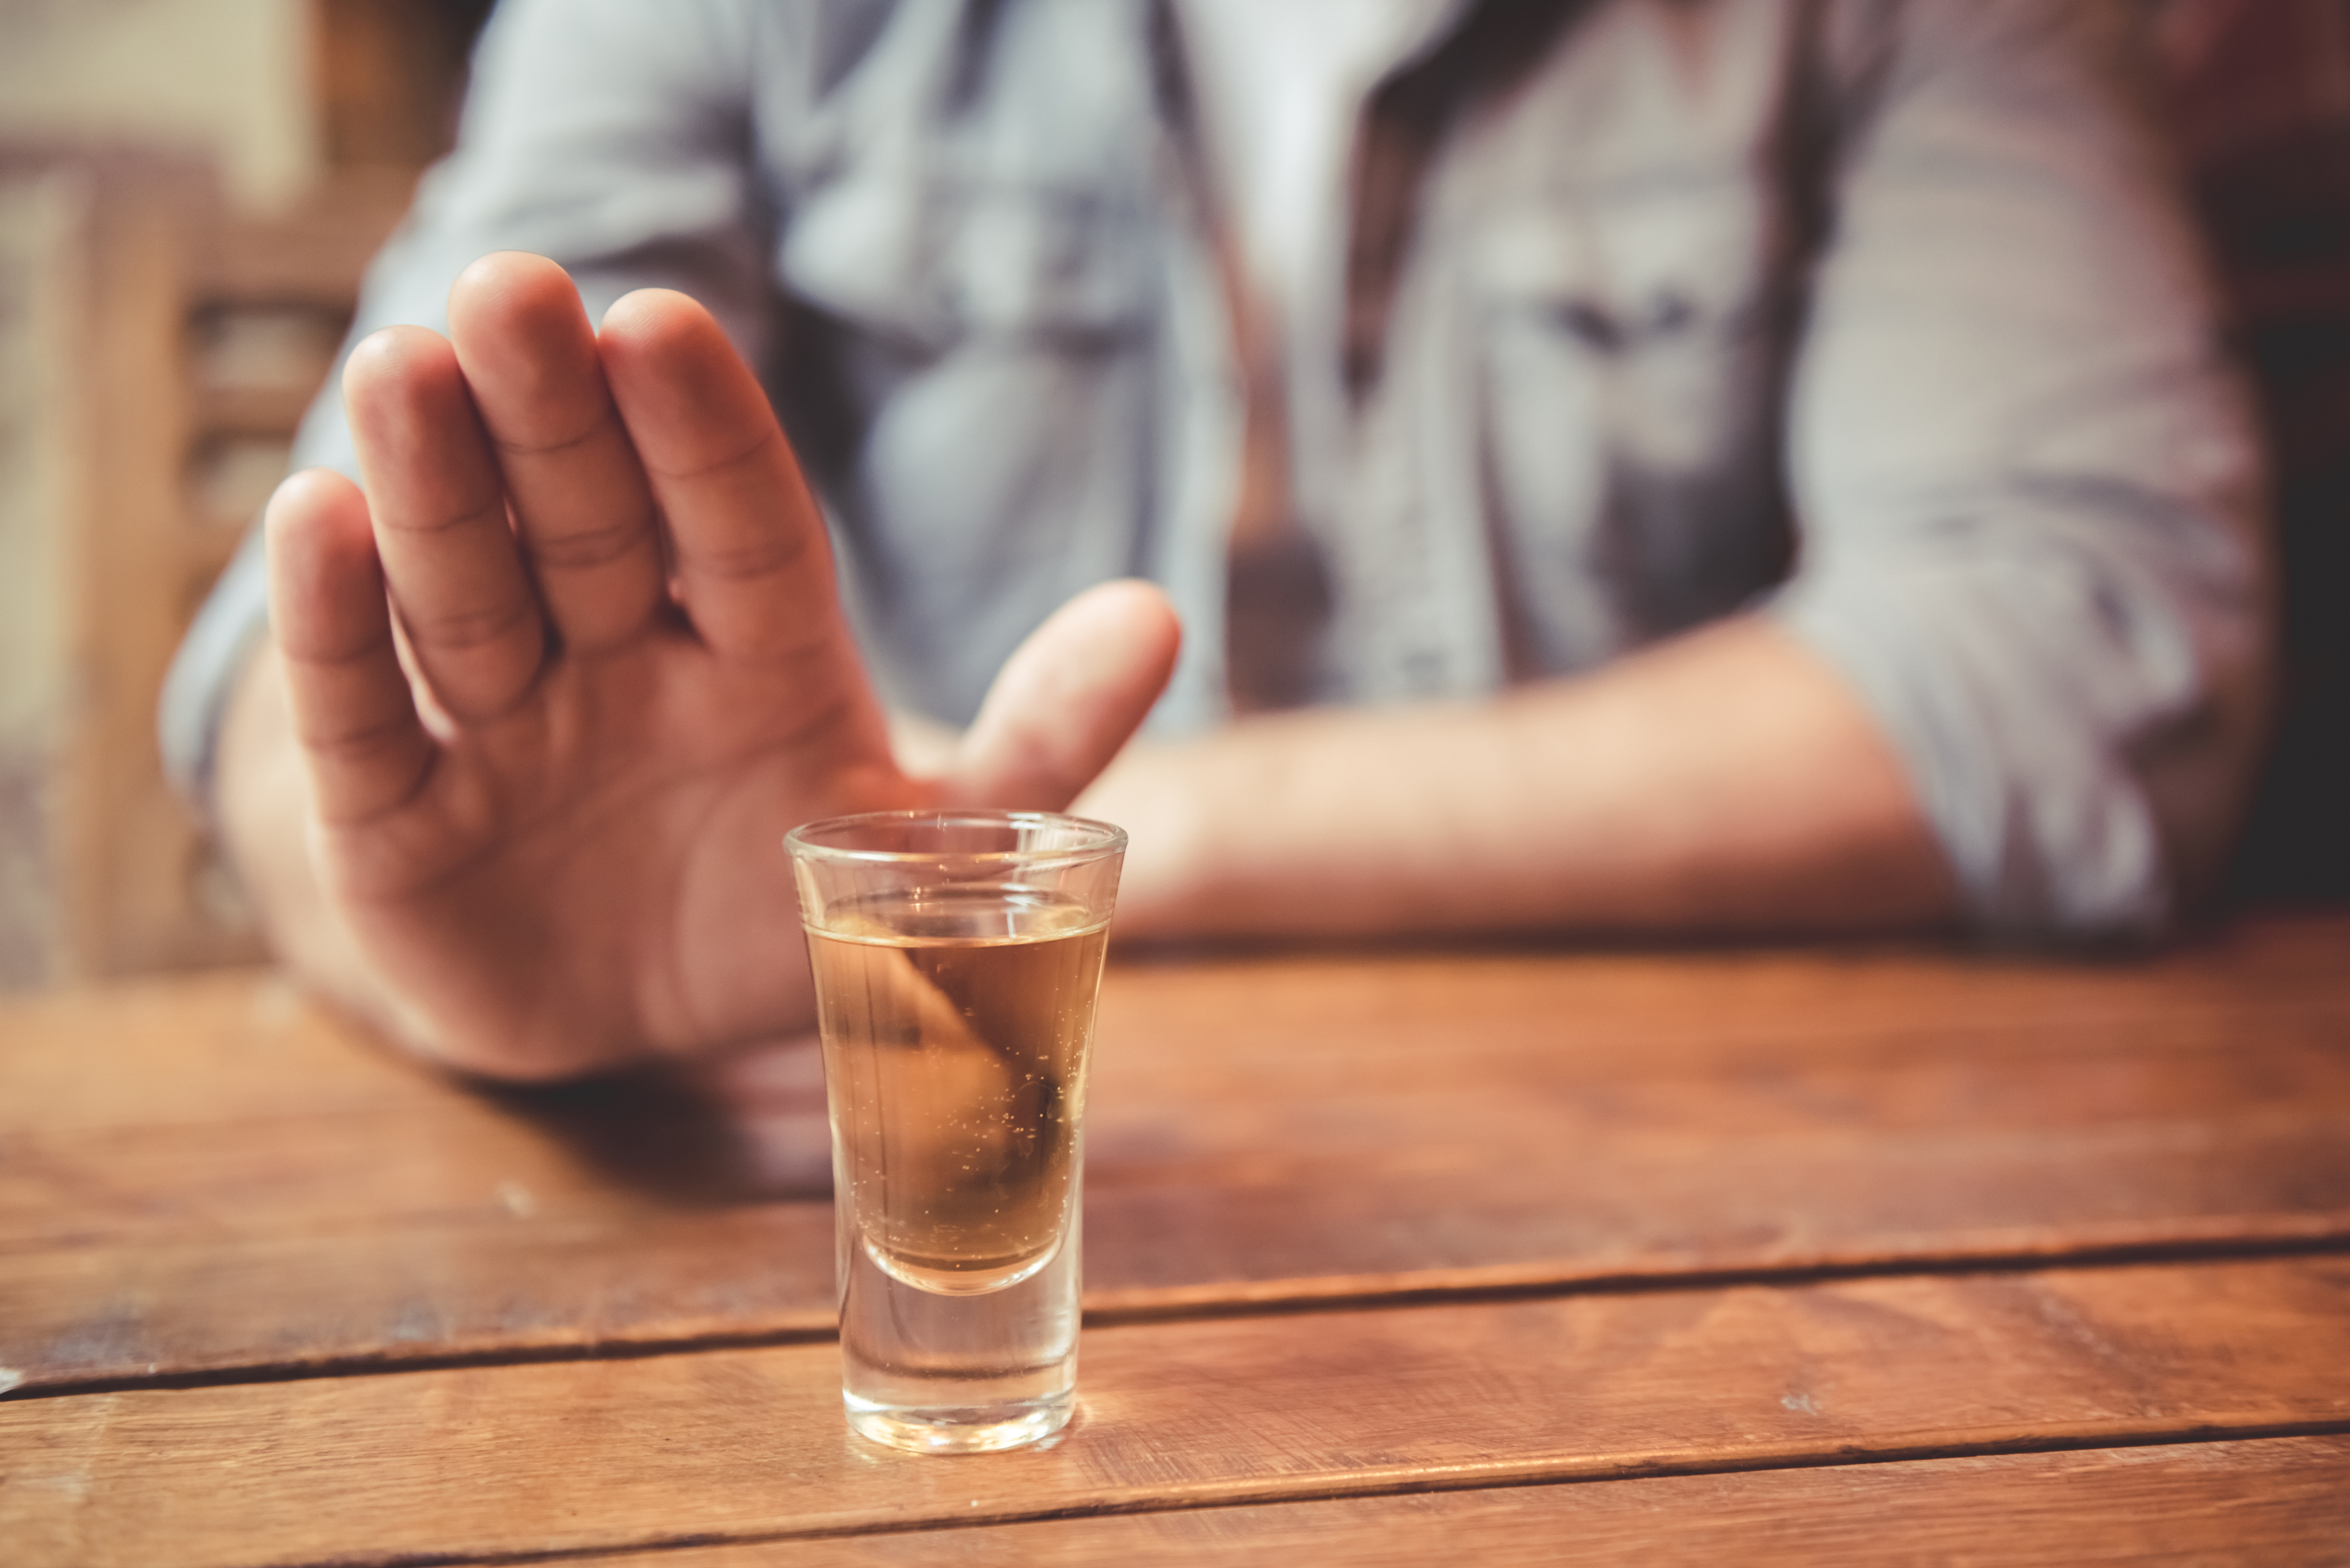 Як кинути пити: все про те, що не виходить зробити самостійно  